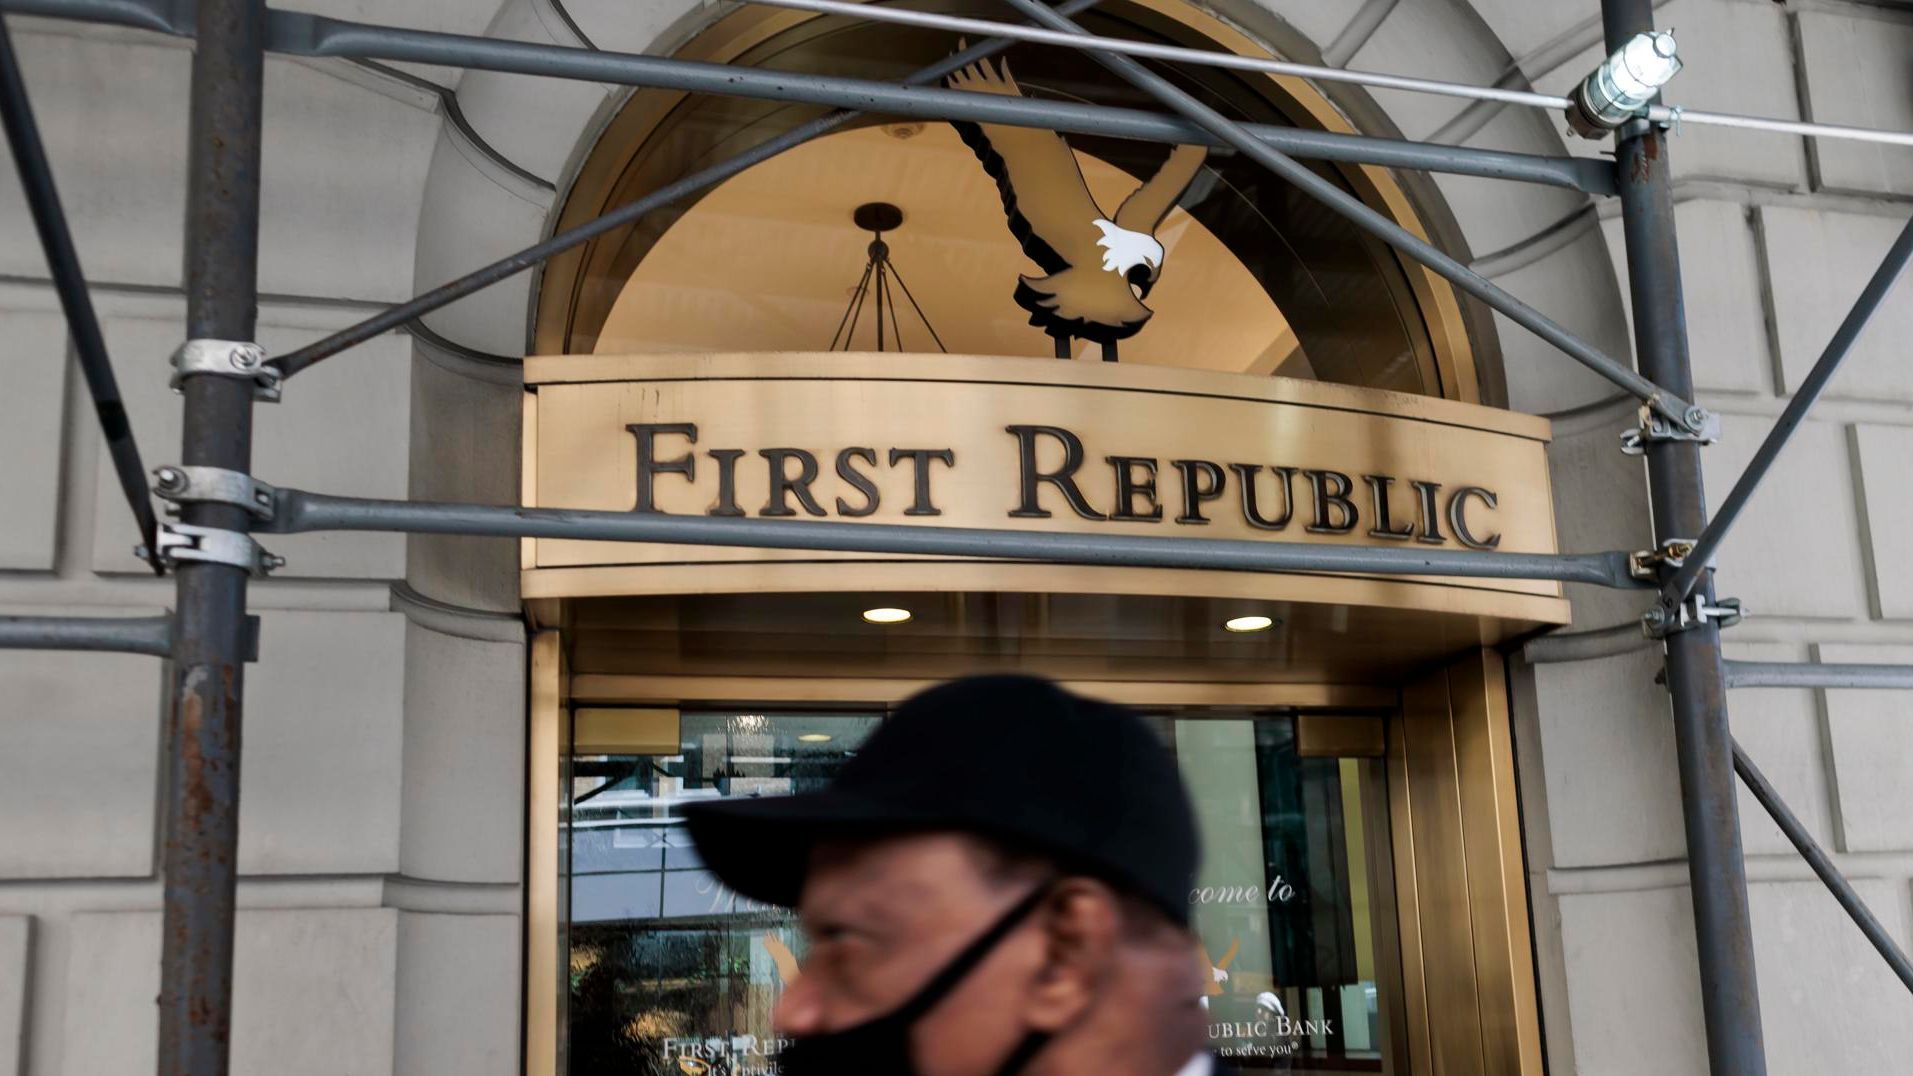 Once bancos de Estados Unidos se unen para rescatar al First Republic Bank